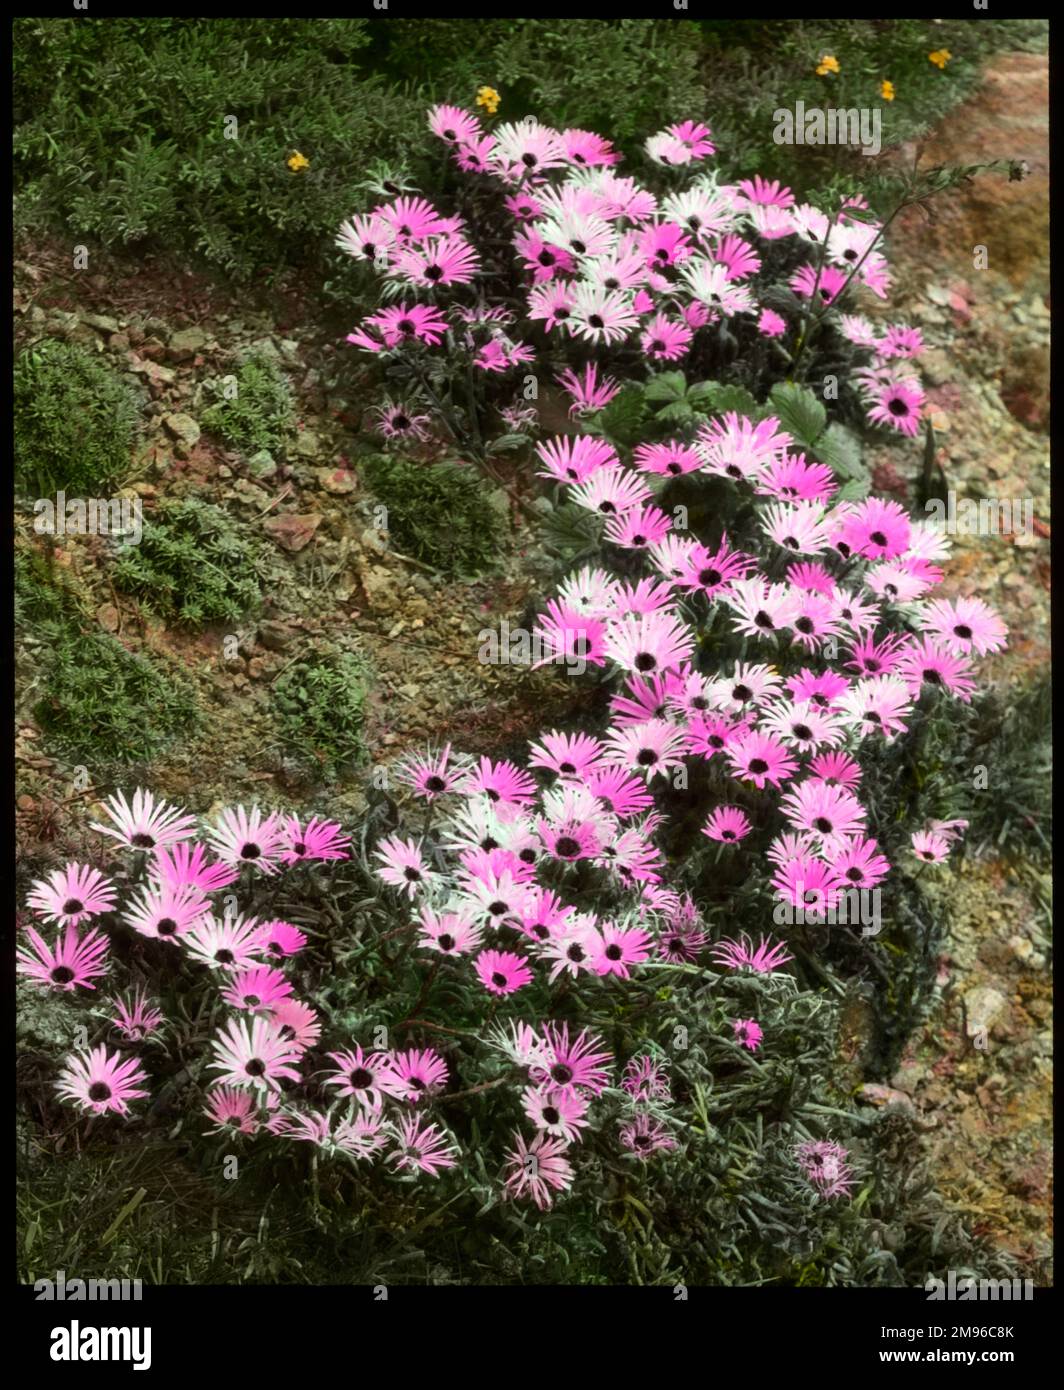 Mesembryanthemum (Mittagsblüte) Tricolor, eine blühende Pflanze der Aizoaceae-Familie, die im südlichen Afrika heimisch ist, mit Blütenblättern in drei verschiedenen Rosa-Schattierungen. Stockfoto